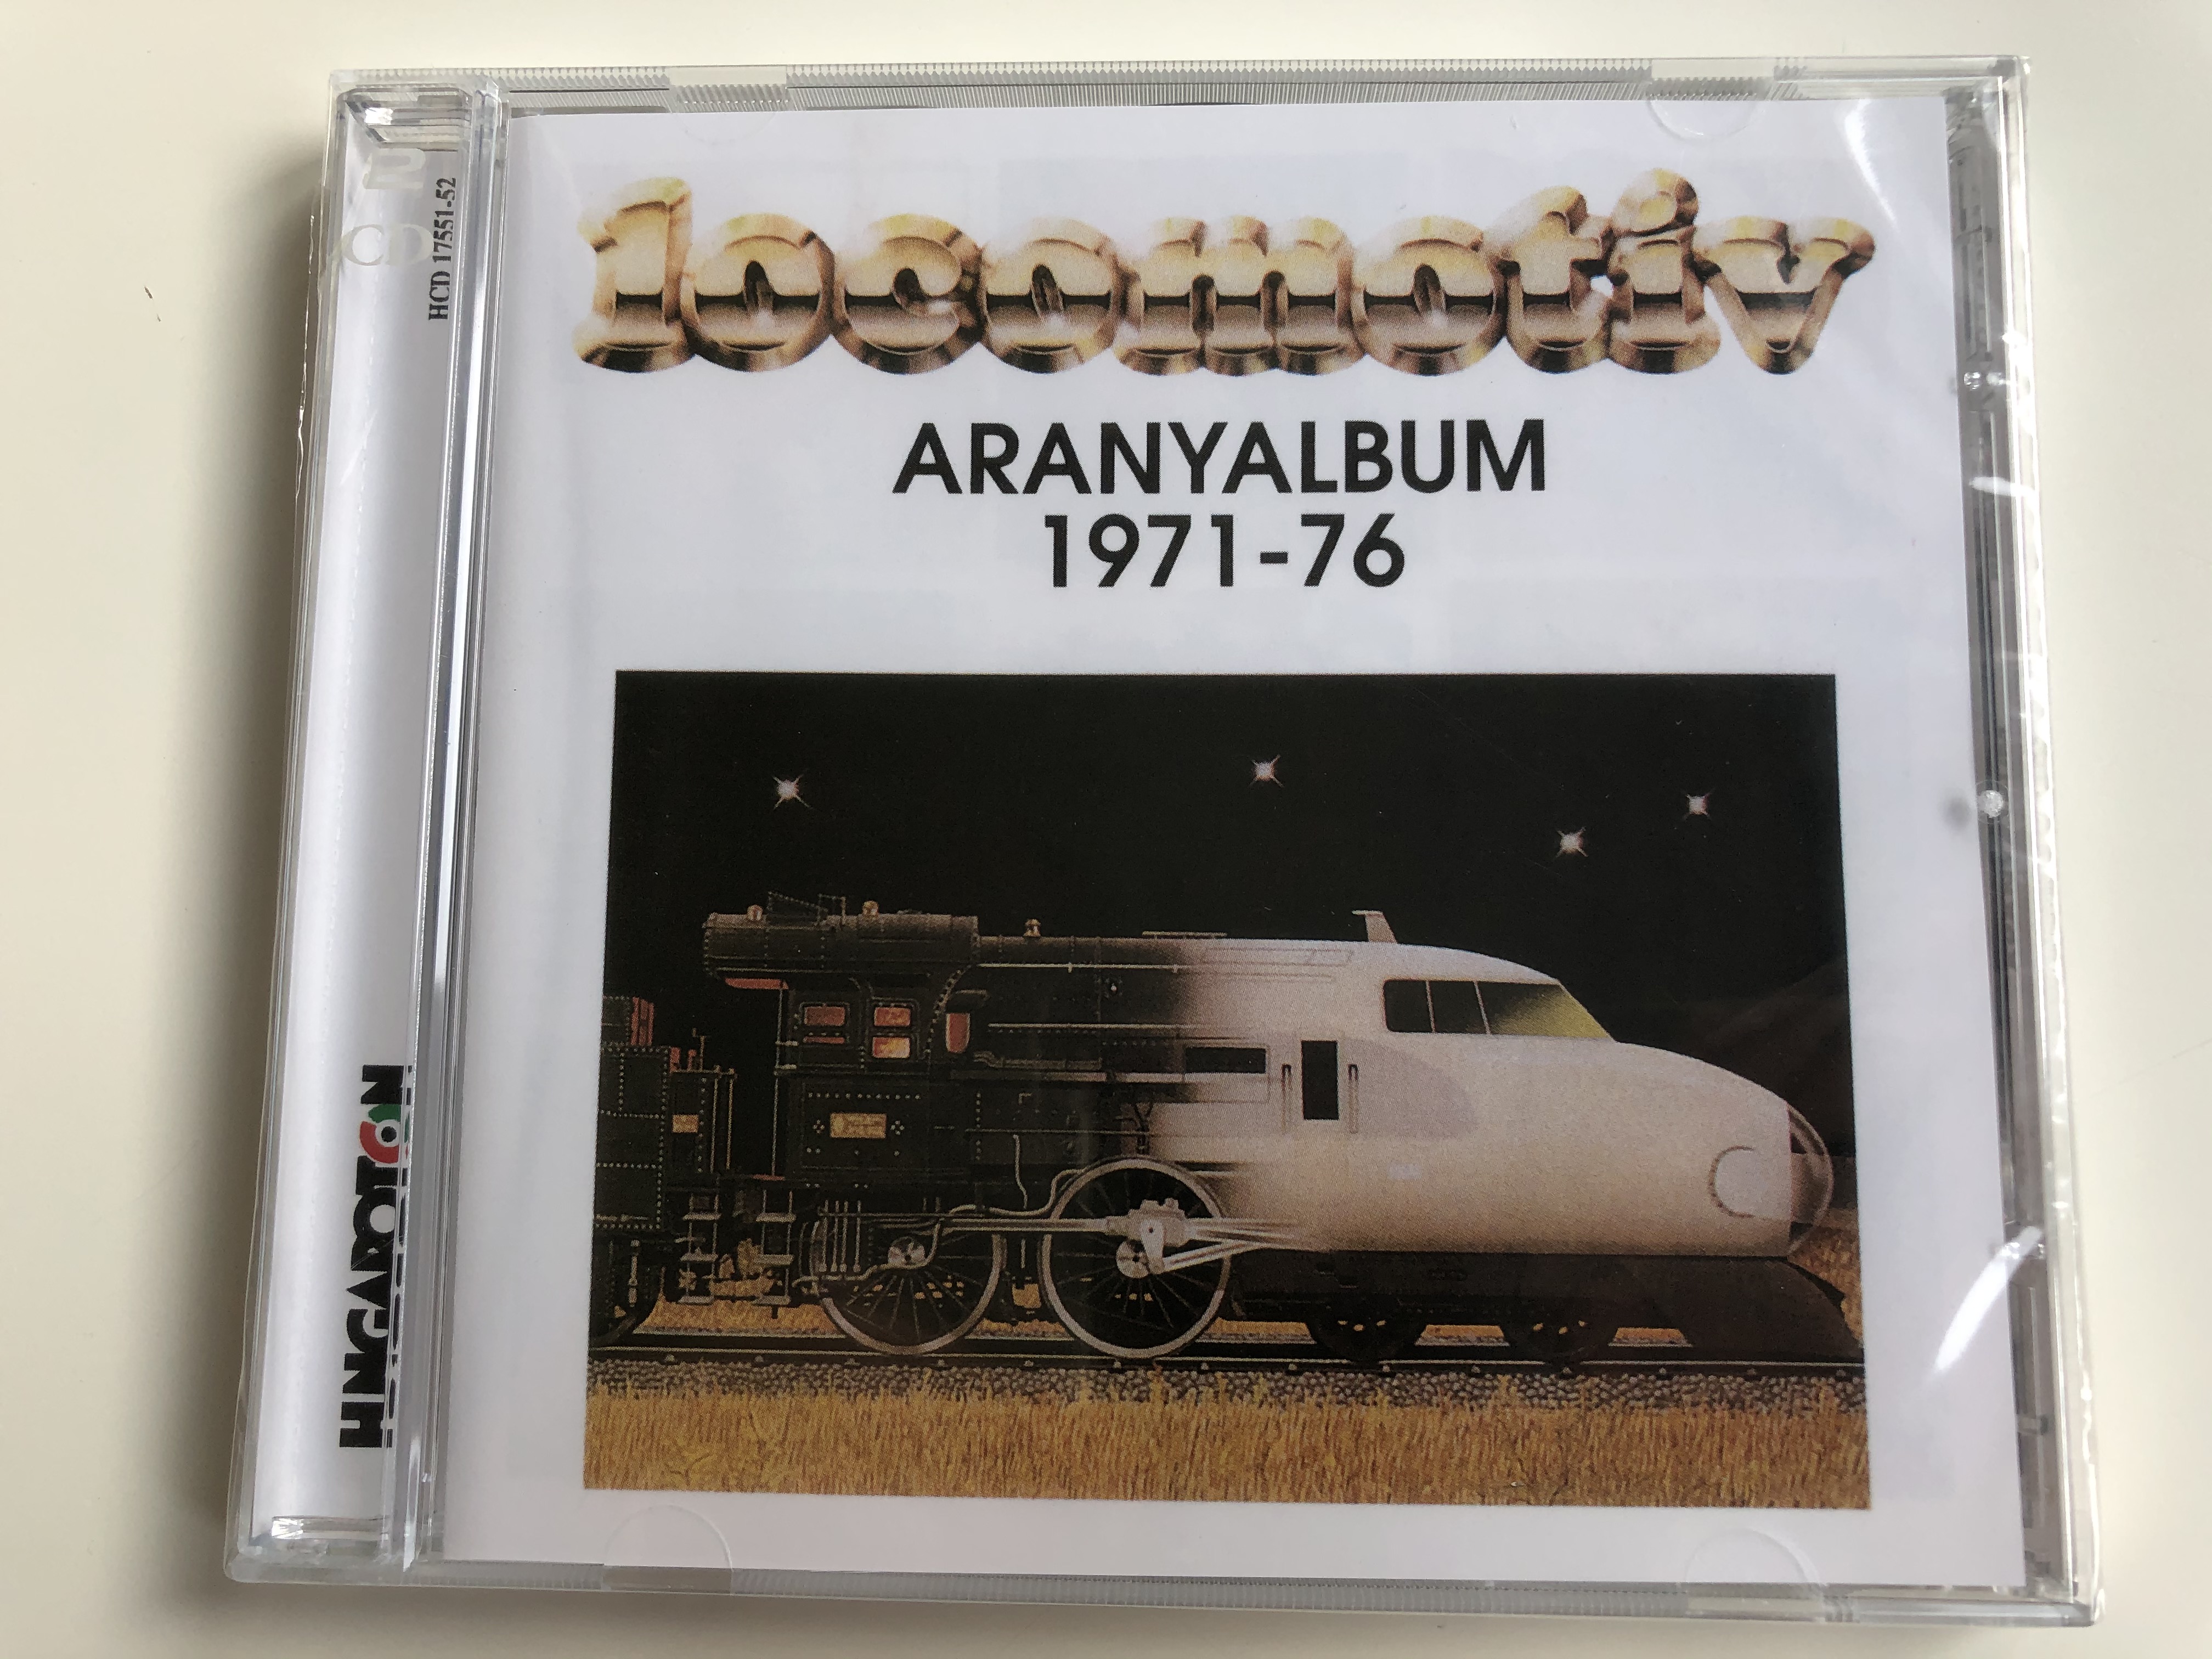 locomotiv-gt-aranyalbum-1971-76-hungaroton-2x-audio-cd-hcd-17551-52-1-.jpg